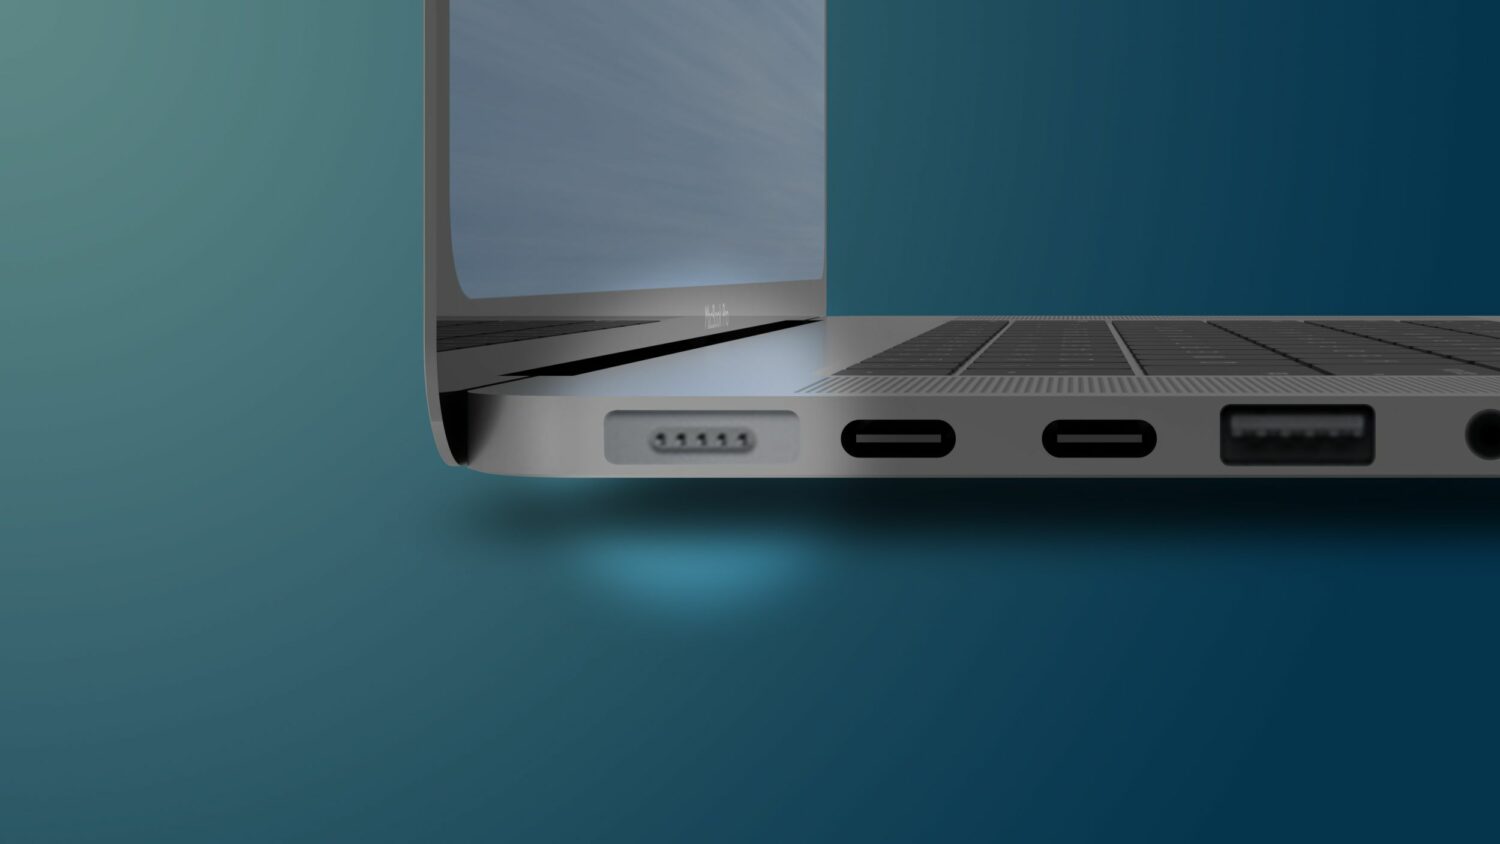 Apple : deux MacBook Pro avec un nouveau design en 2021